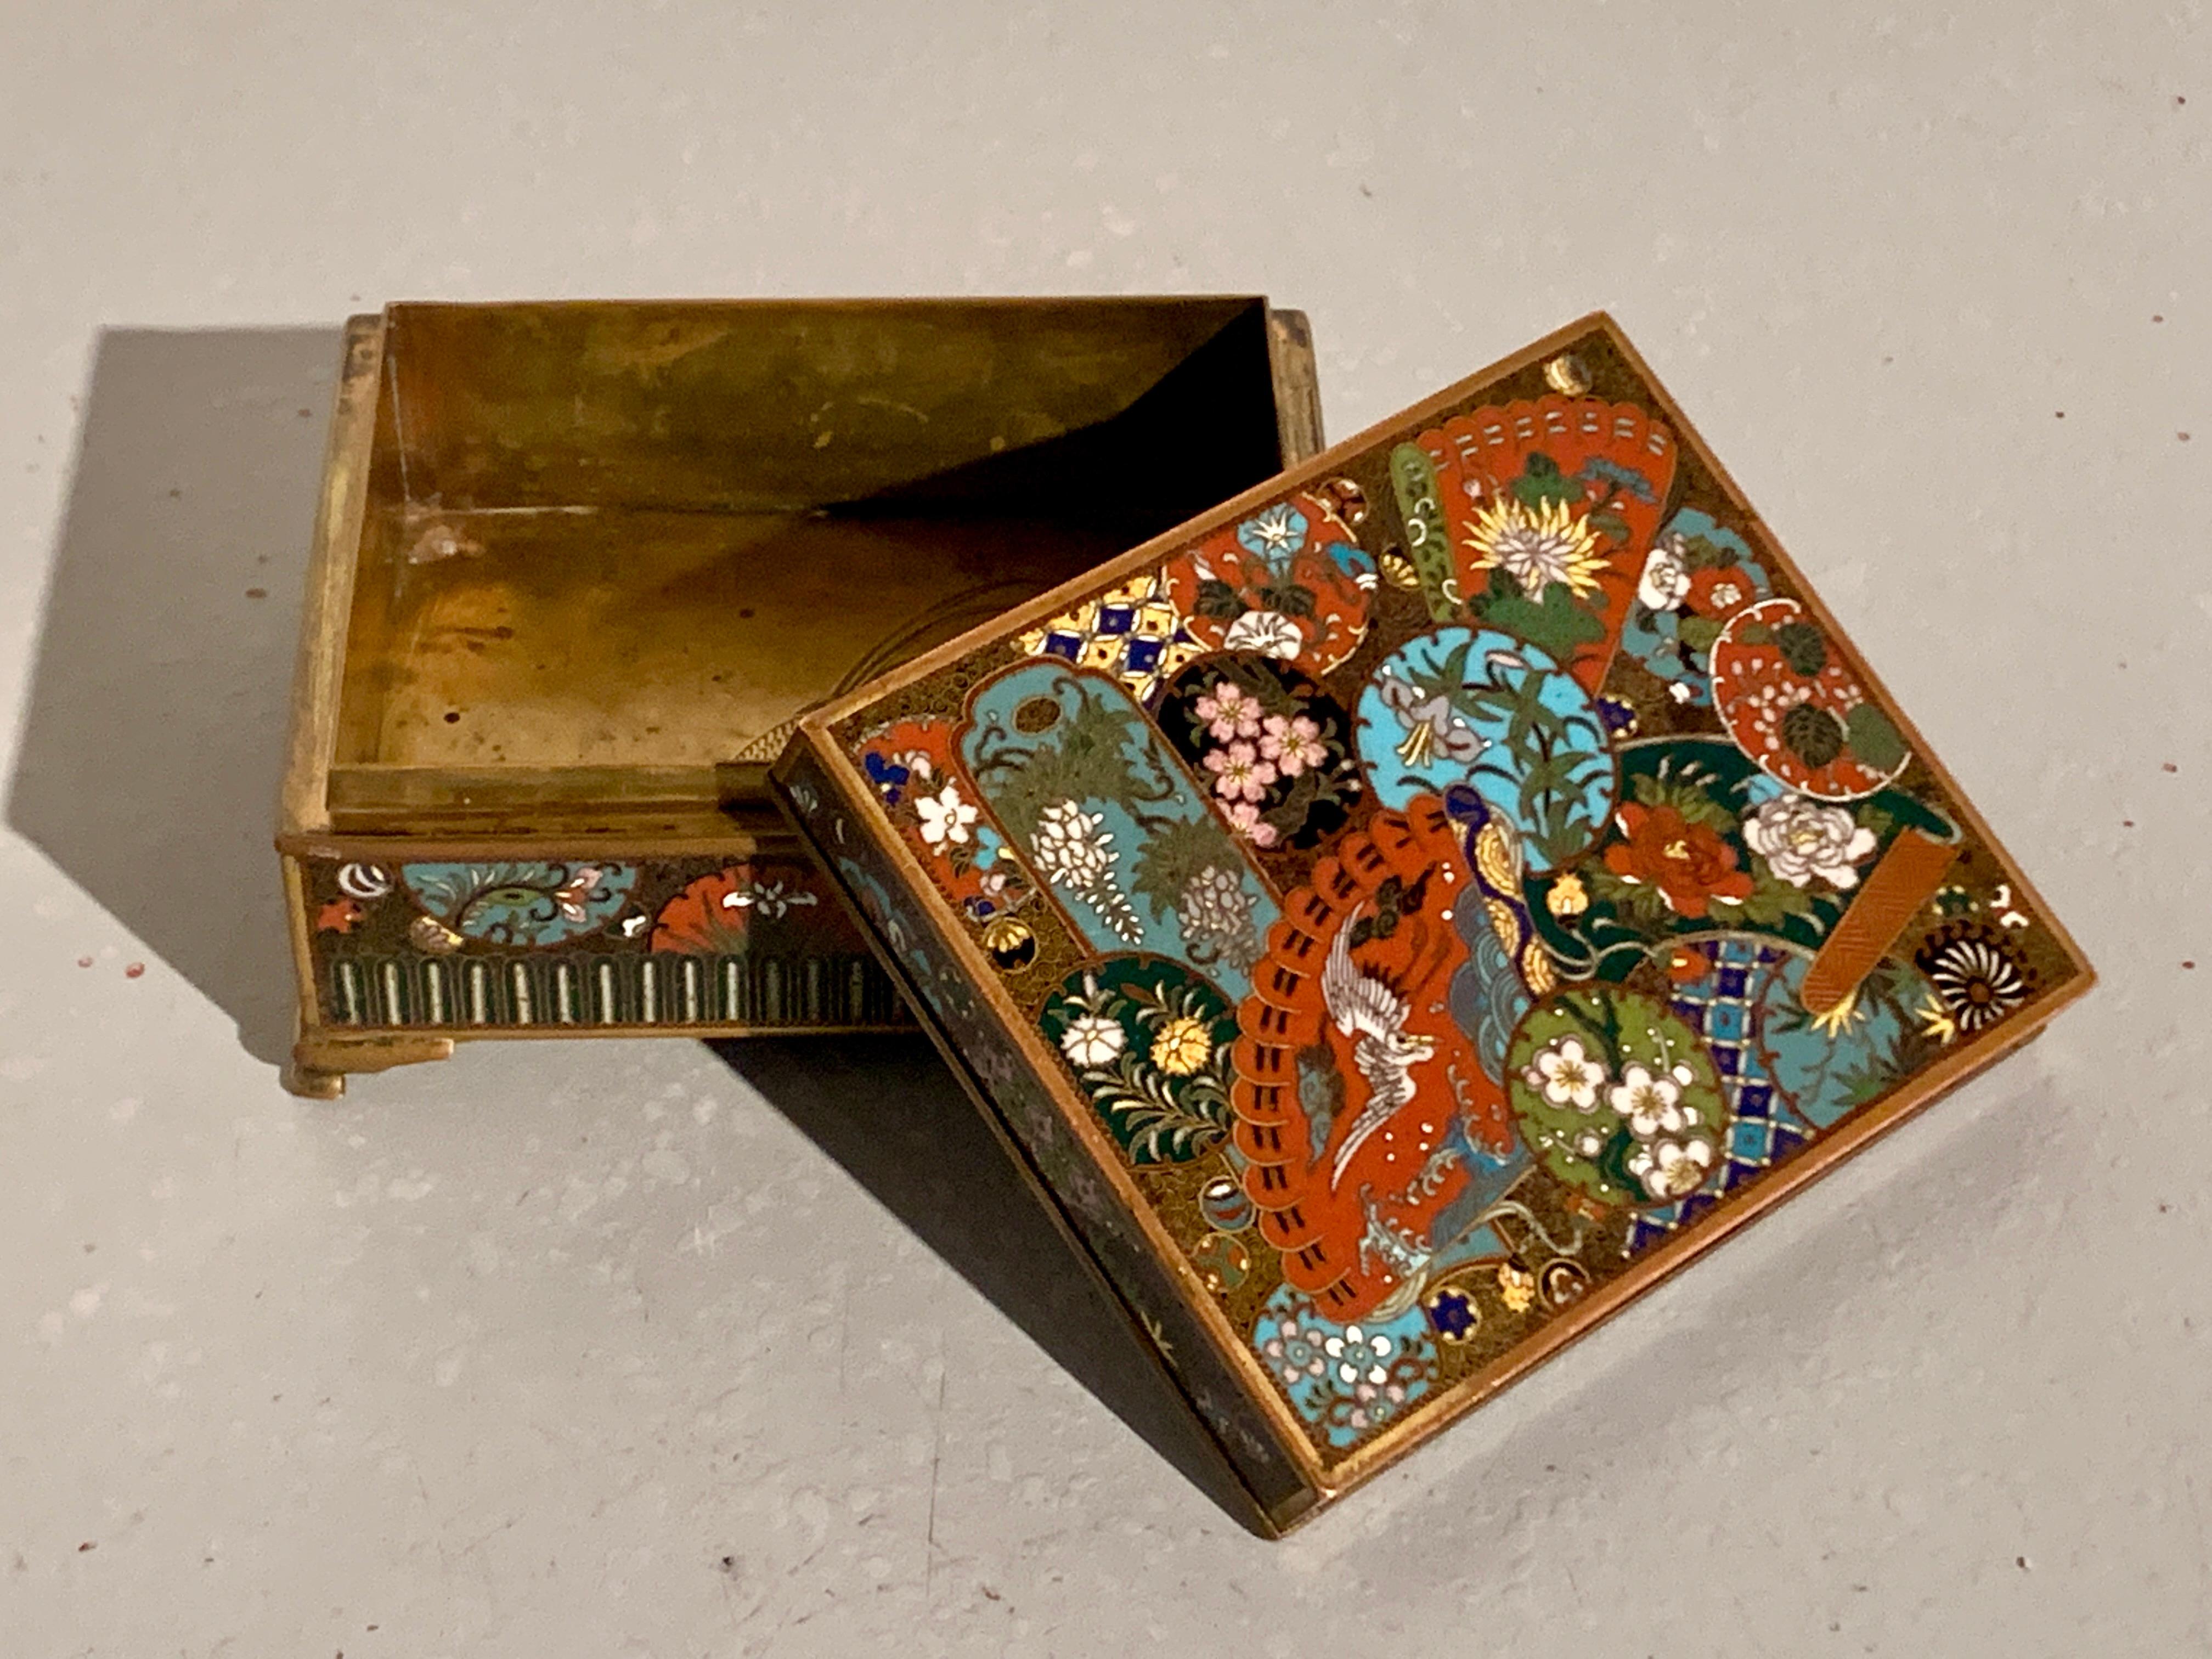 Eine sehr schöne und kunstvoll verzierte japanische Cloisonné-Dose mit Deckel, Meiji-Periode, spätes 19. Jahrhundert, Japan.

Das Schmuckkästchen mit Deckel ist auf einem Kupfersockel mit Cloisonné-Emaille verziert, das Innere ist aus Messing mit